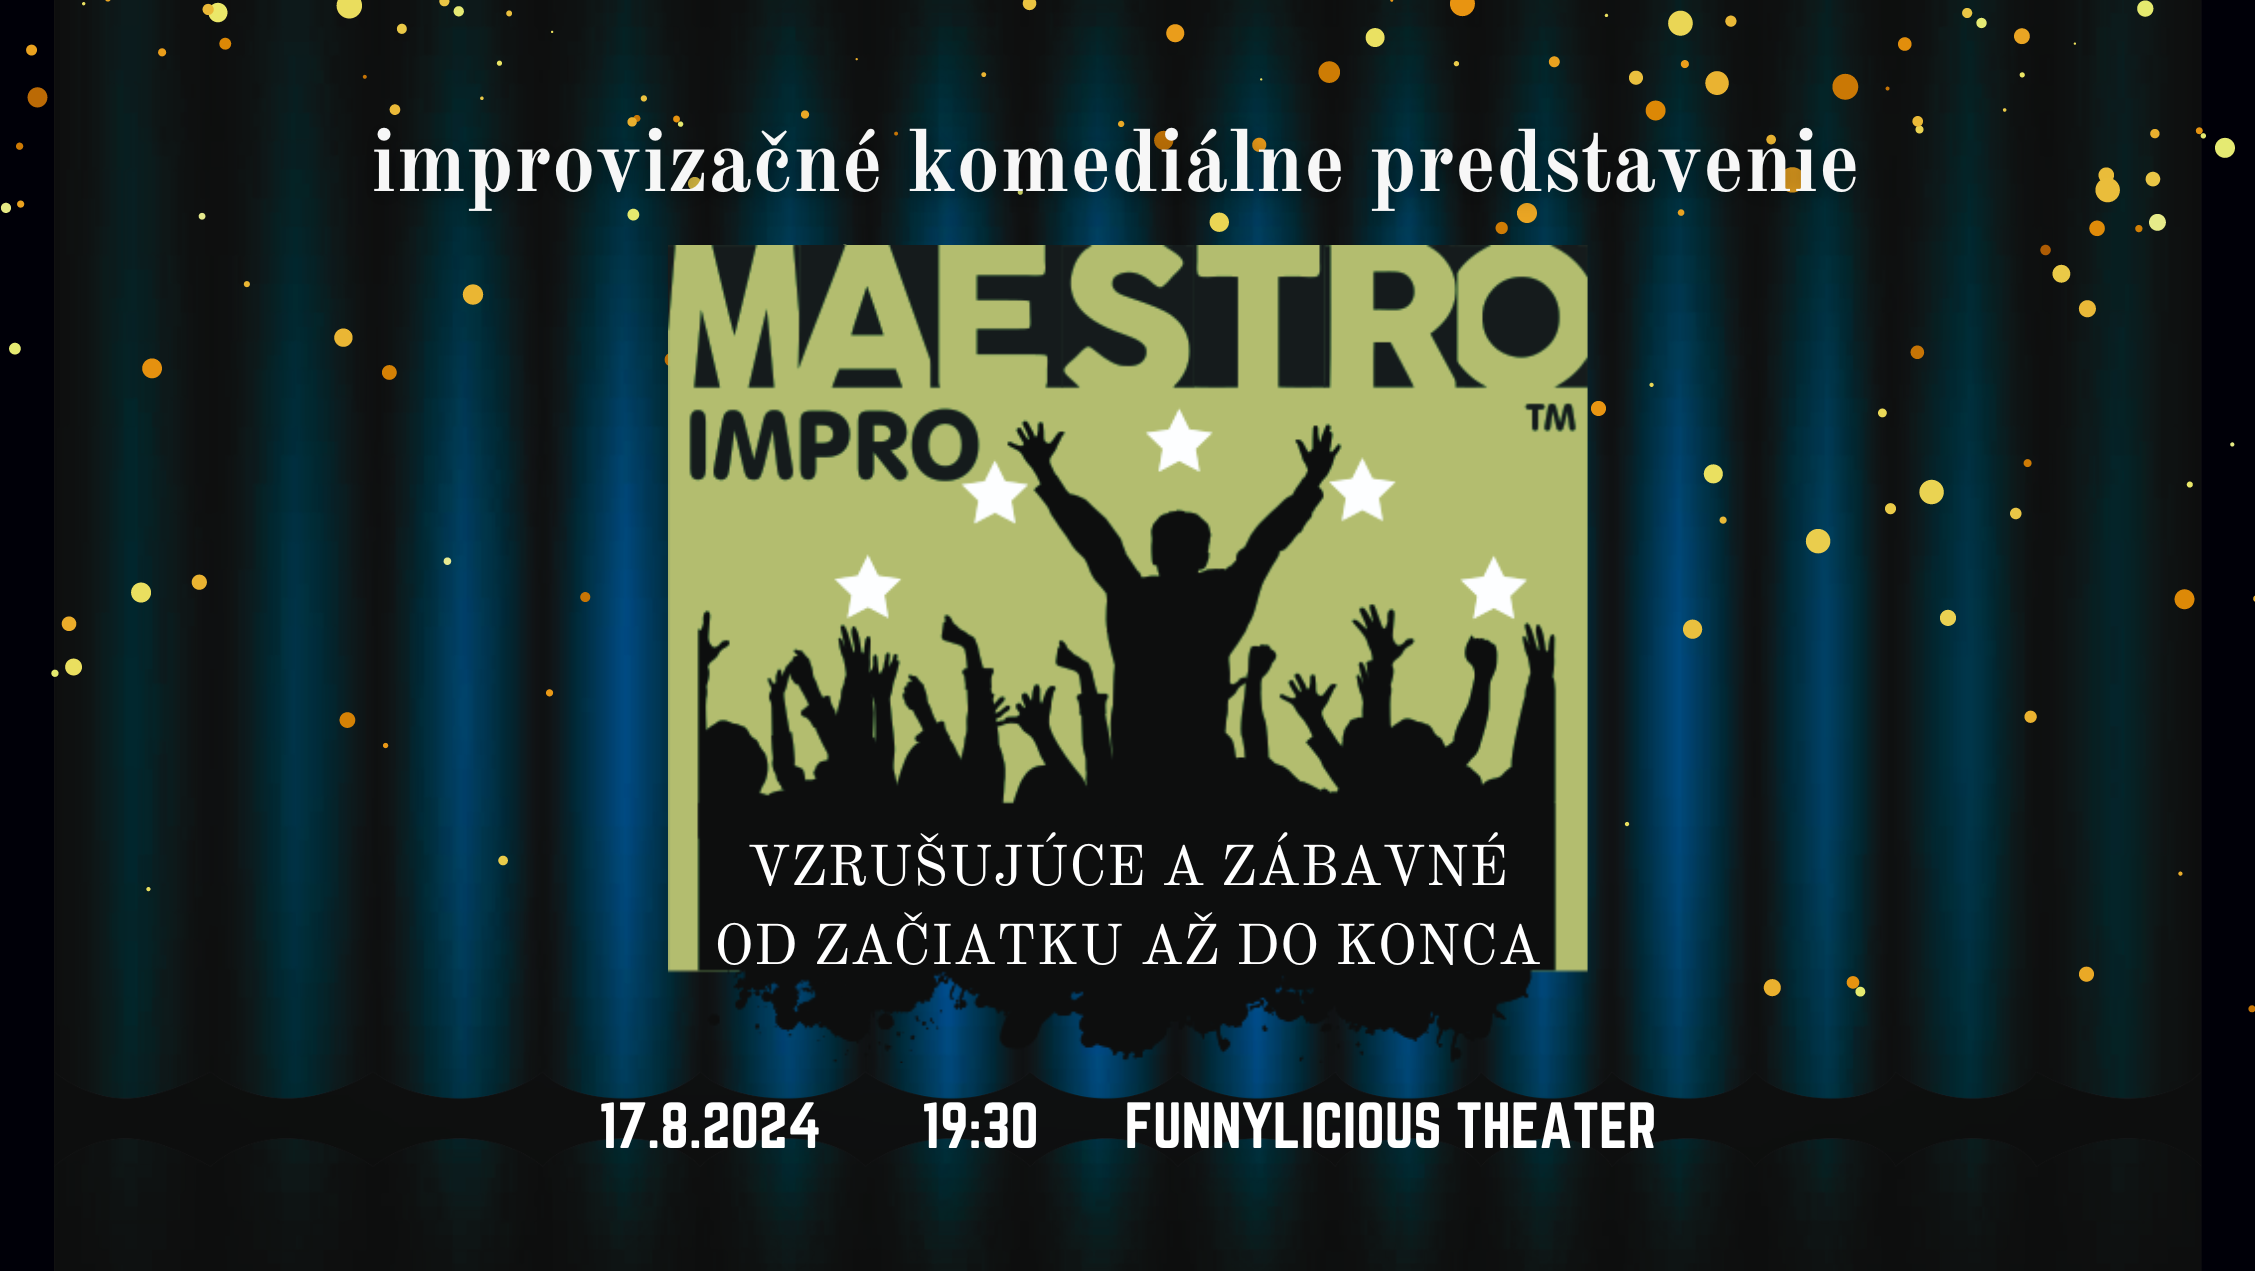 August 17, 2024: Maestro™ improvizačná komediálna show